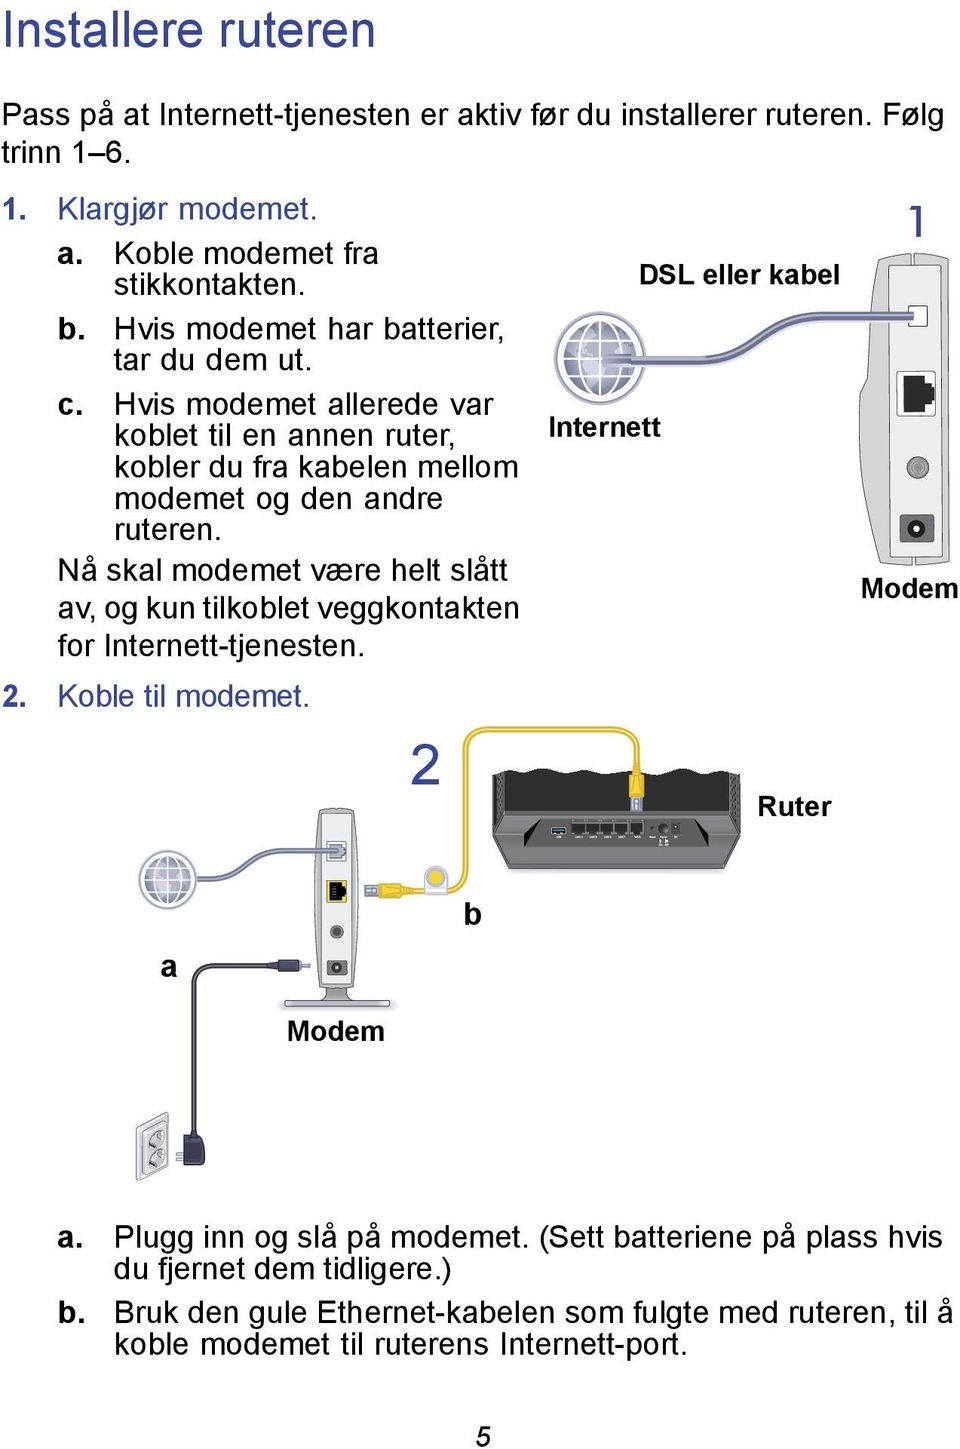 Hvis modemet allerede var koblet til en annen ruter, Internett kobler du fra kabelen mellom modemet og den andre ruteren.